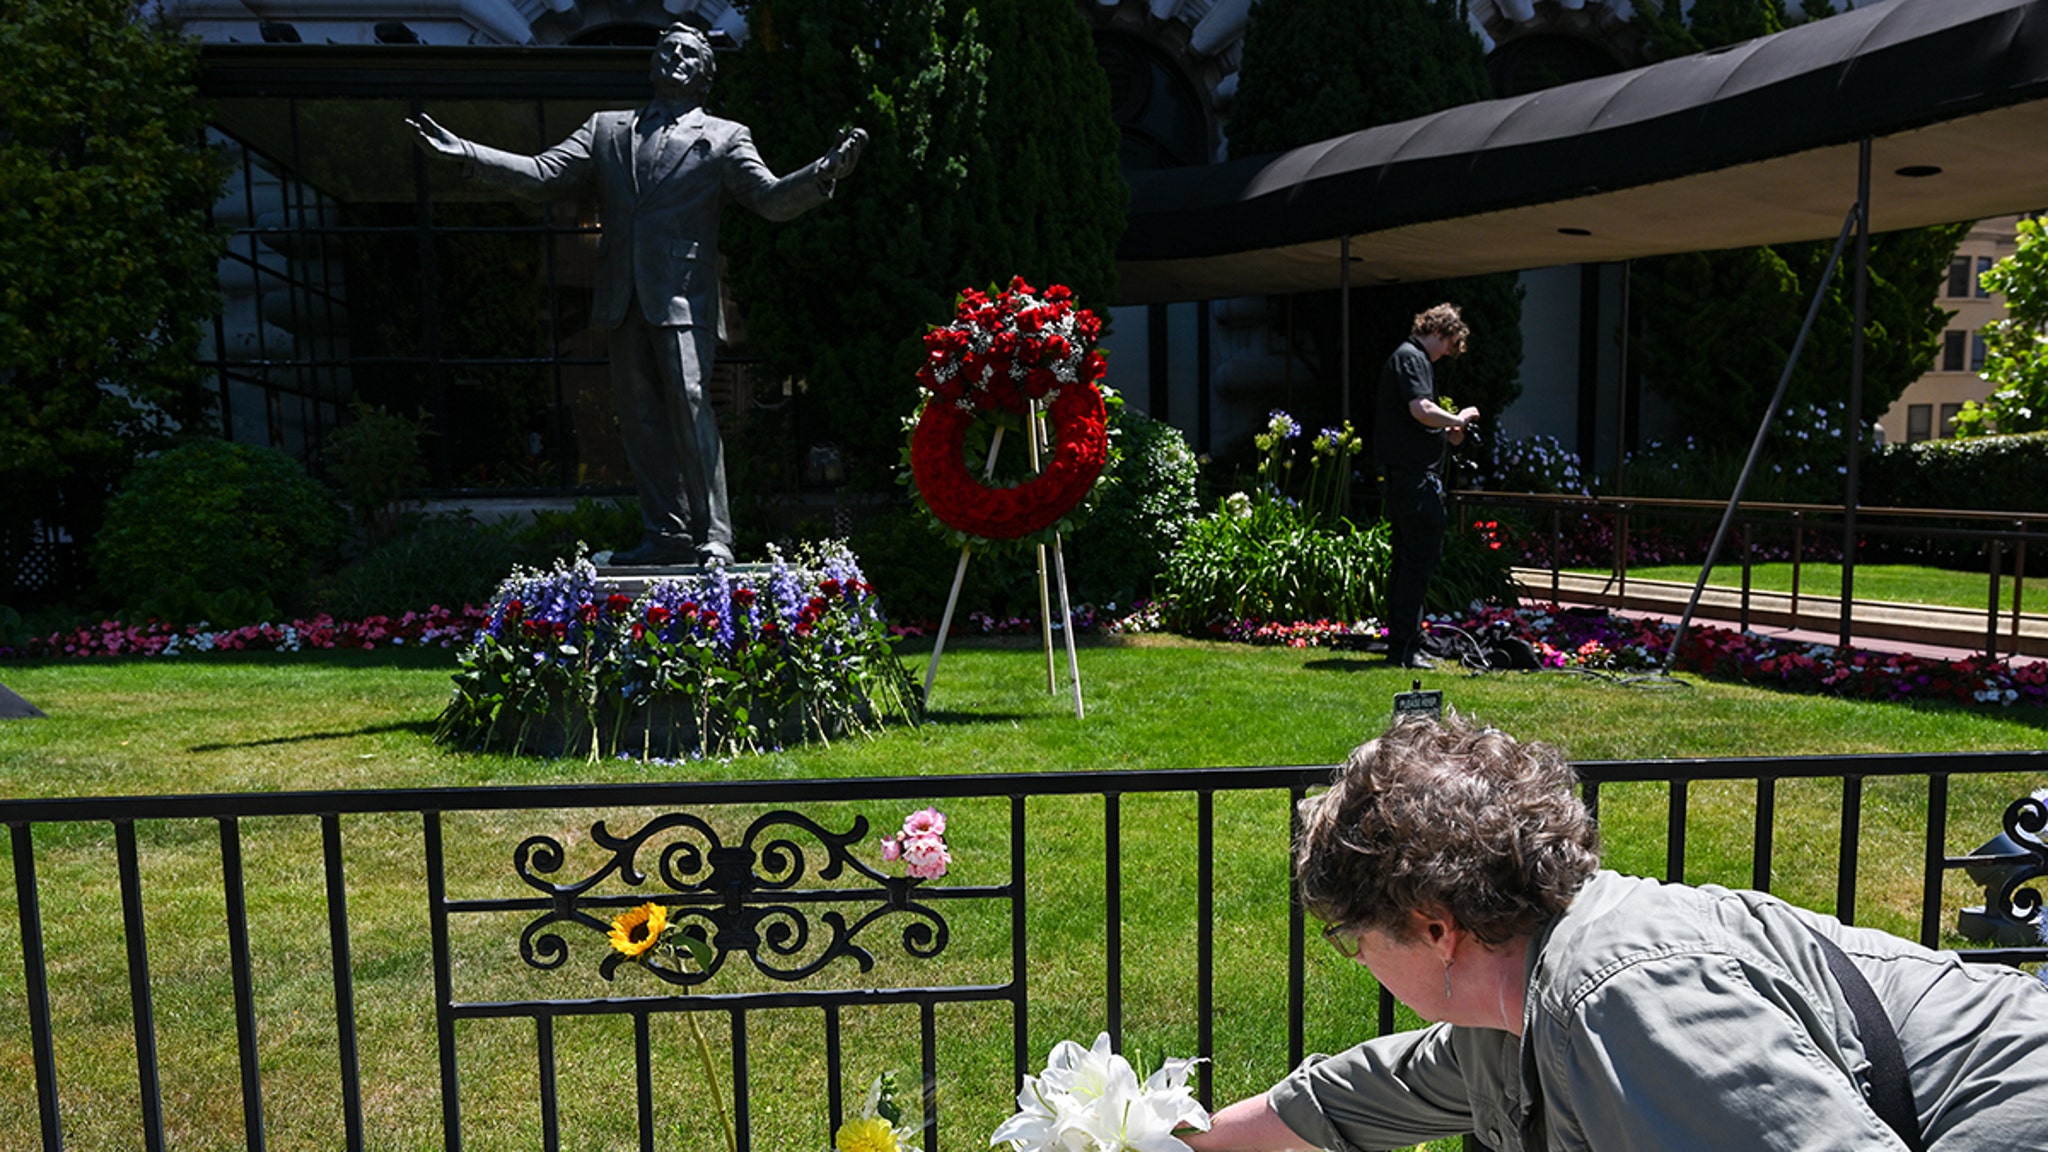 Monumentos a Tony Bennett aparecen en todo el país tras la muerte del cantante